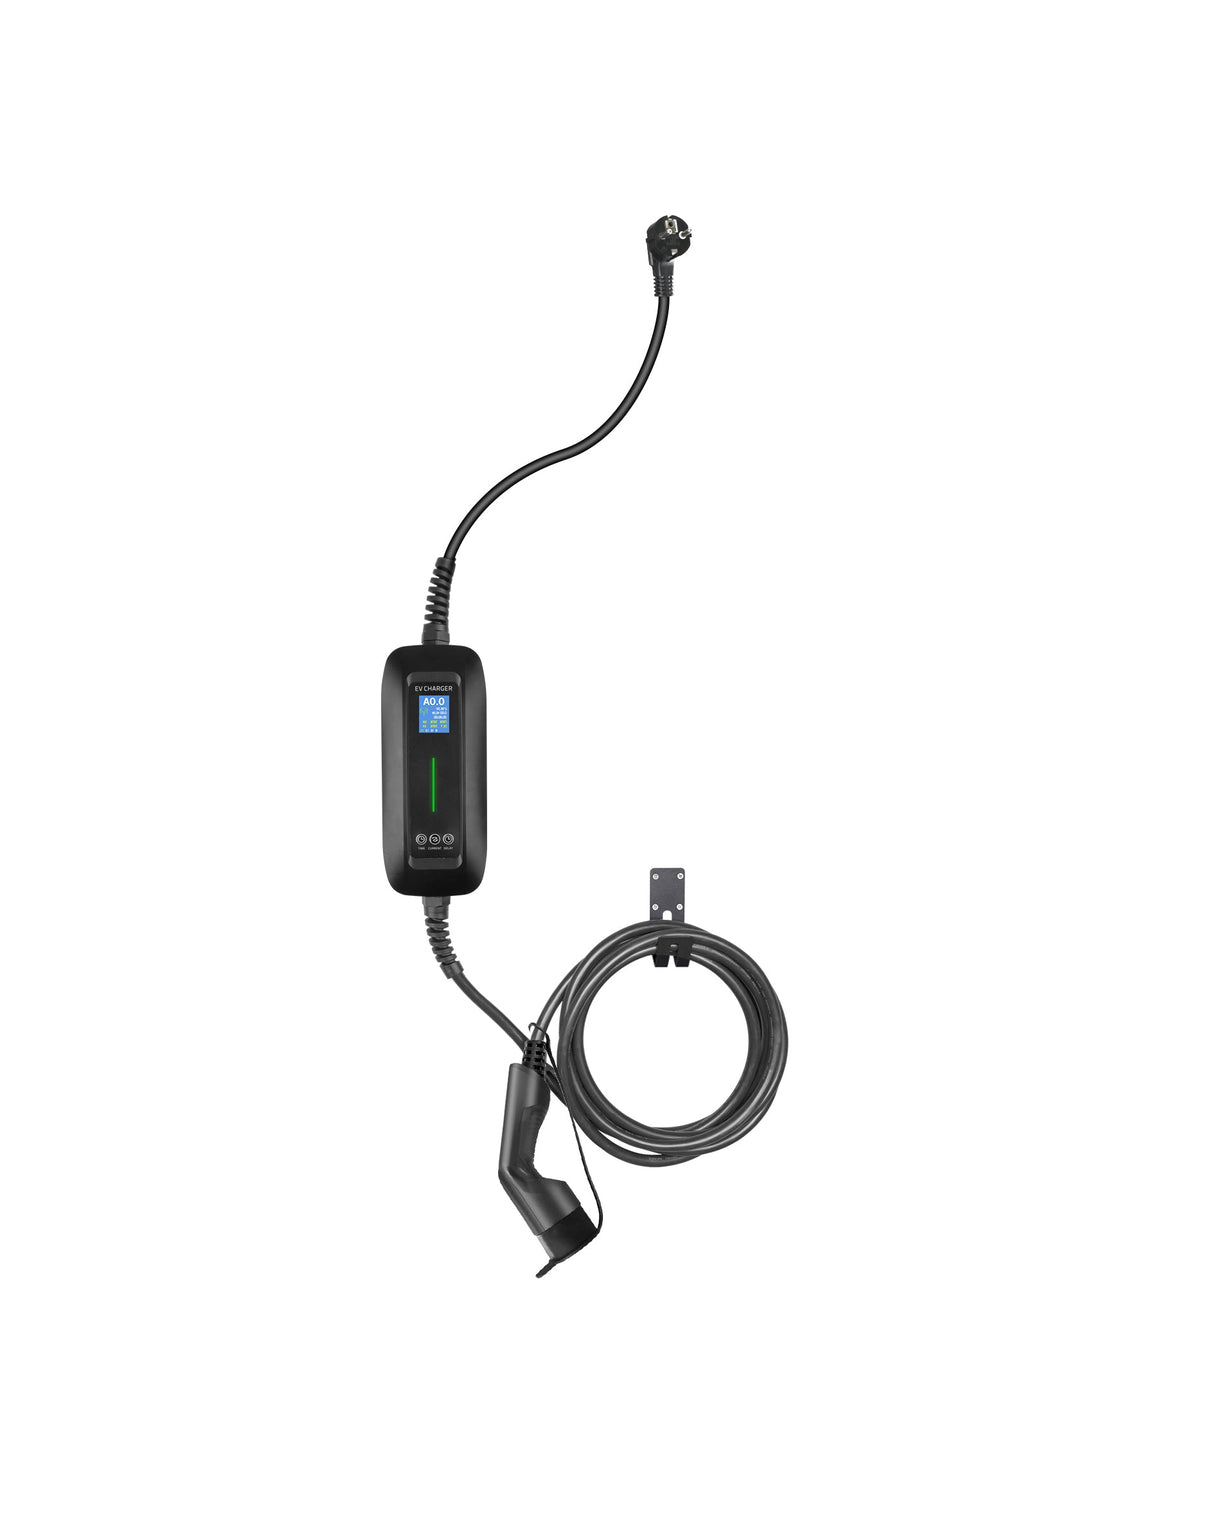 Chargeur mobile MG5 - LCD Black Type 2 à Schuko - Fonction de chargement et de mémoire reportée